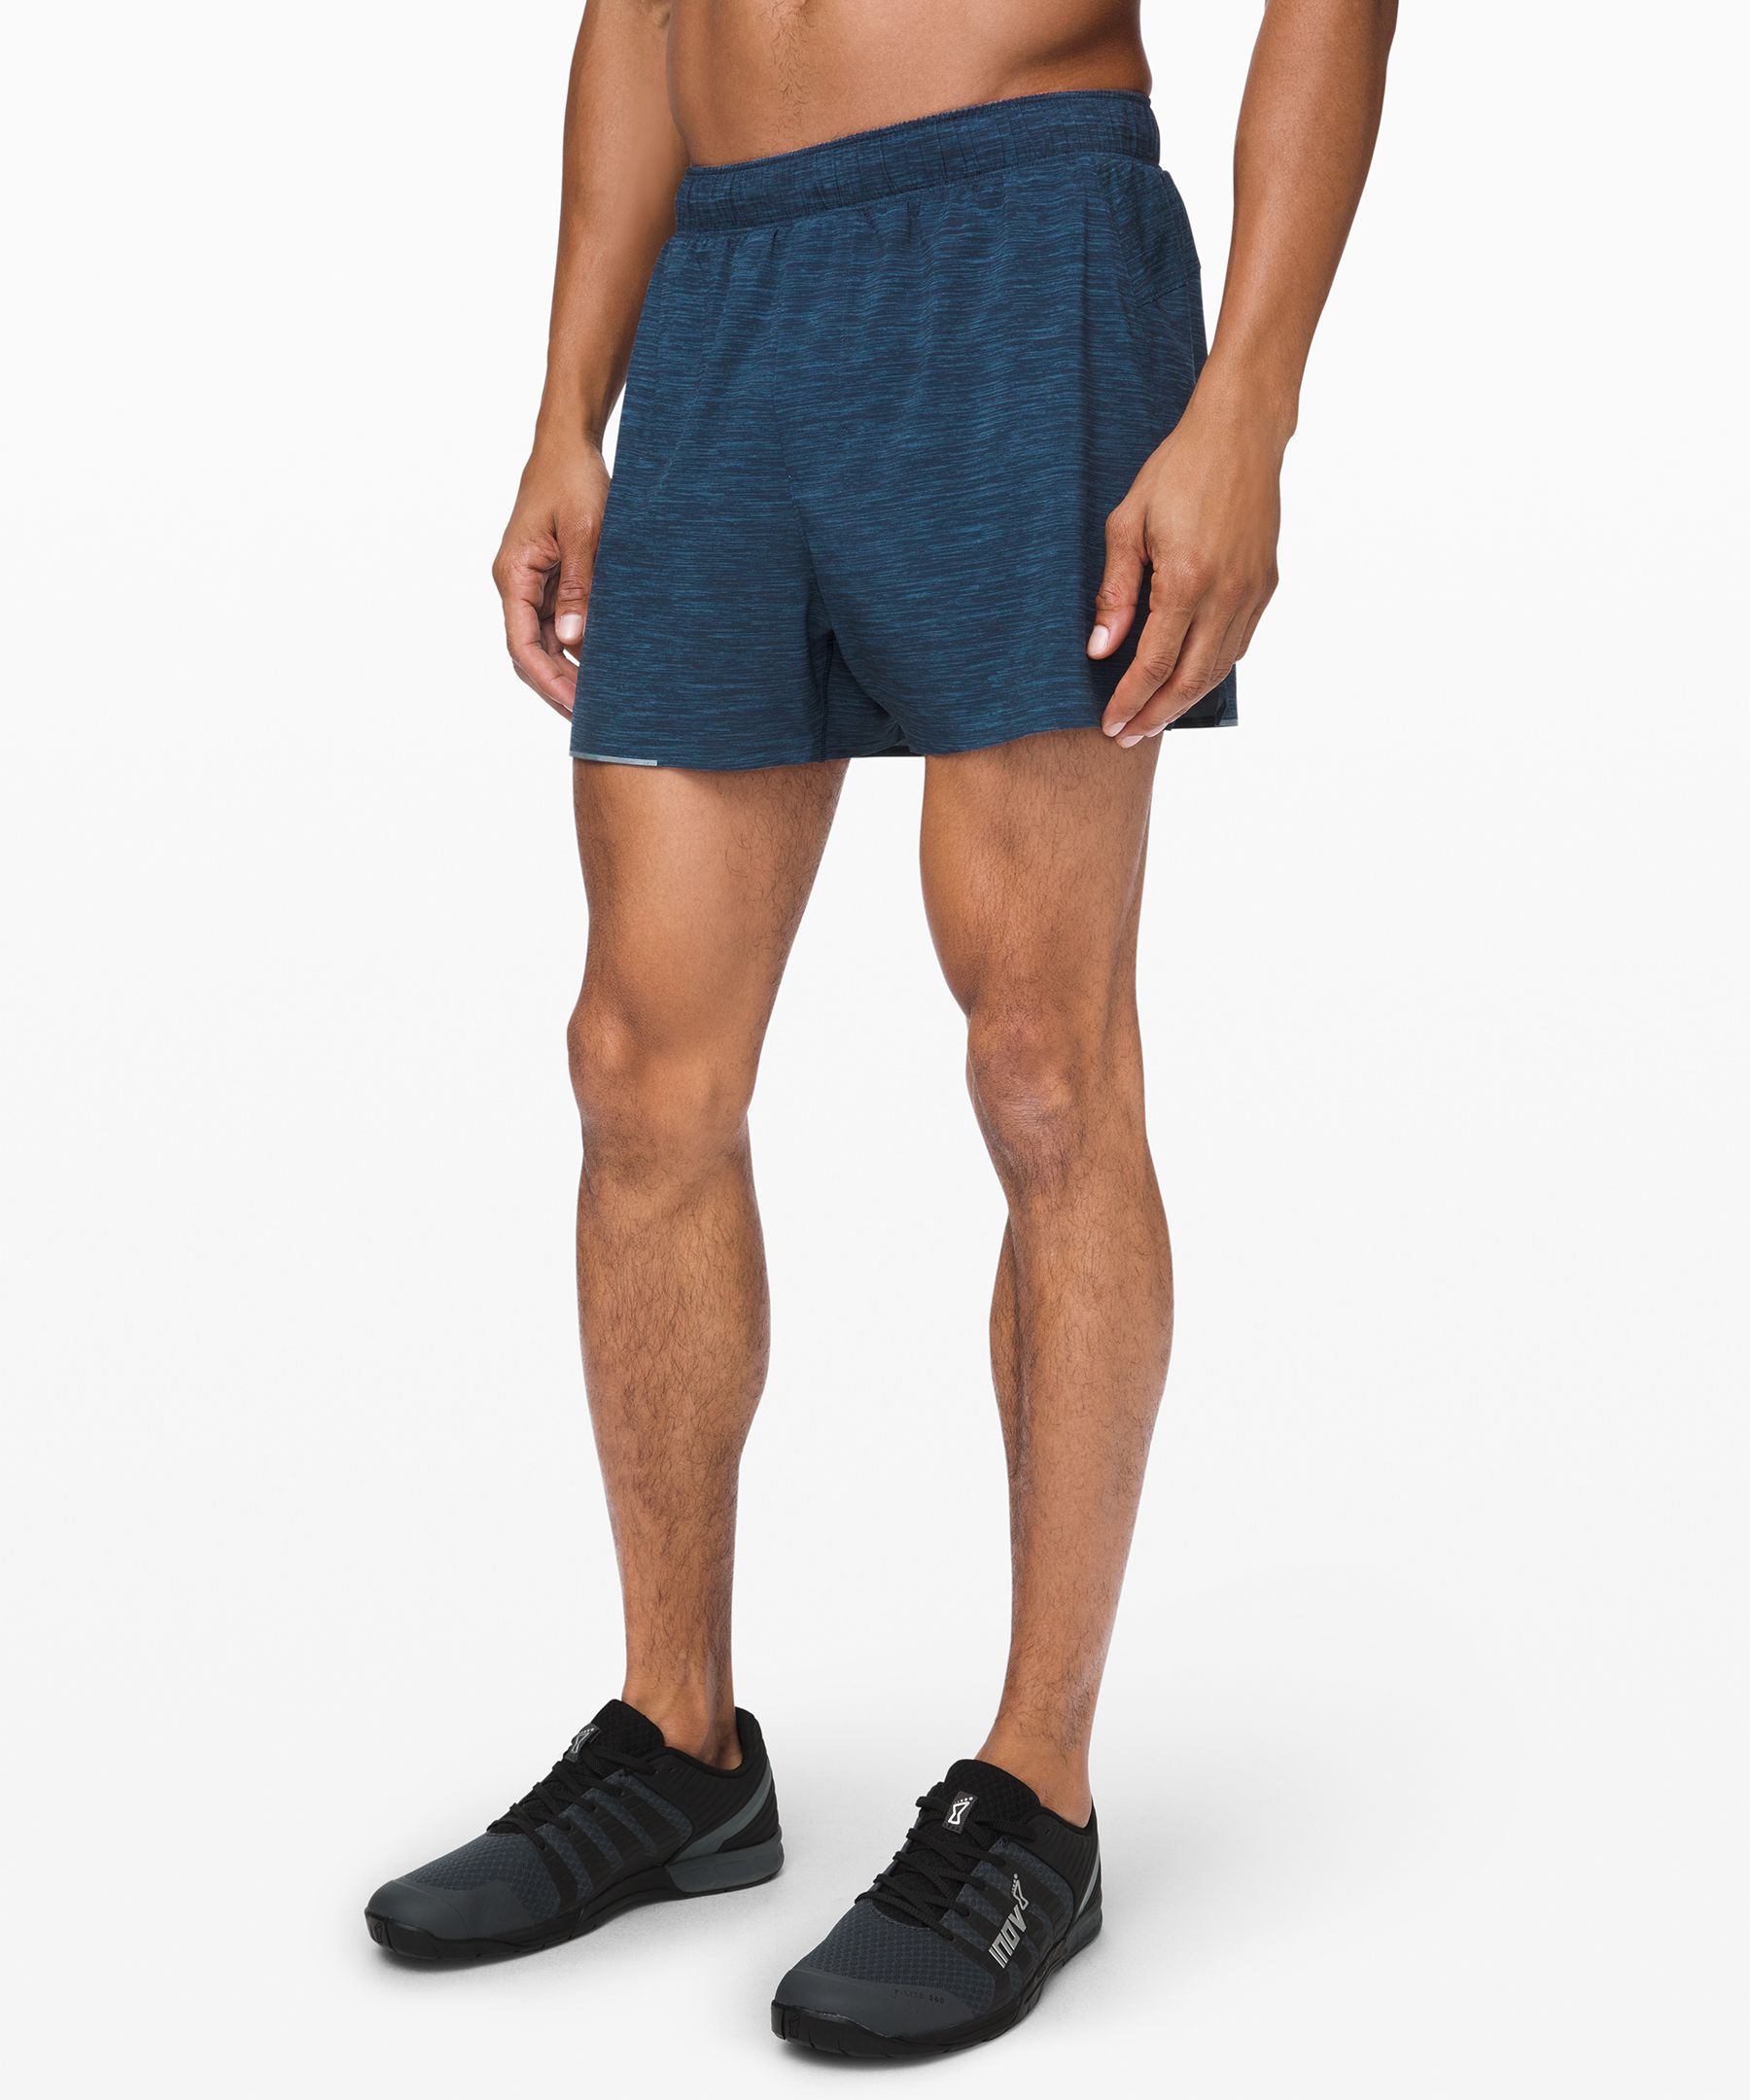 lululemon 5 inch shorts